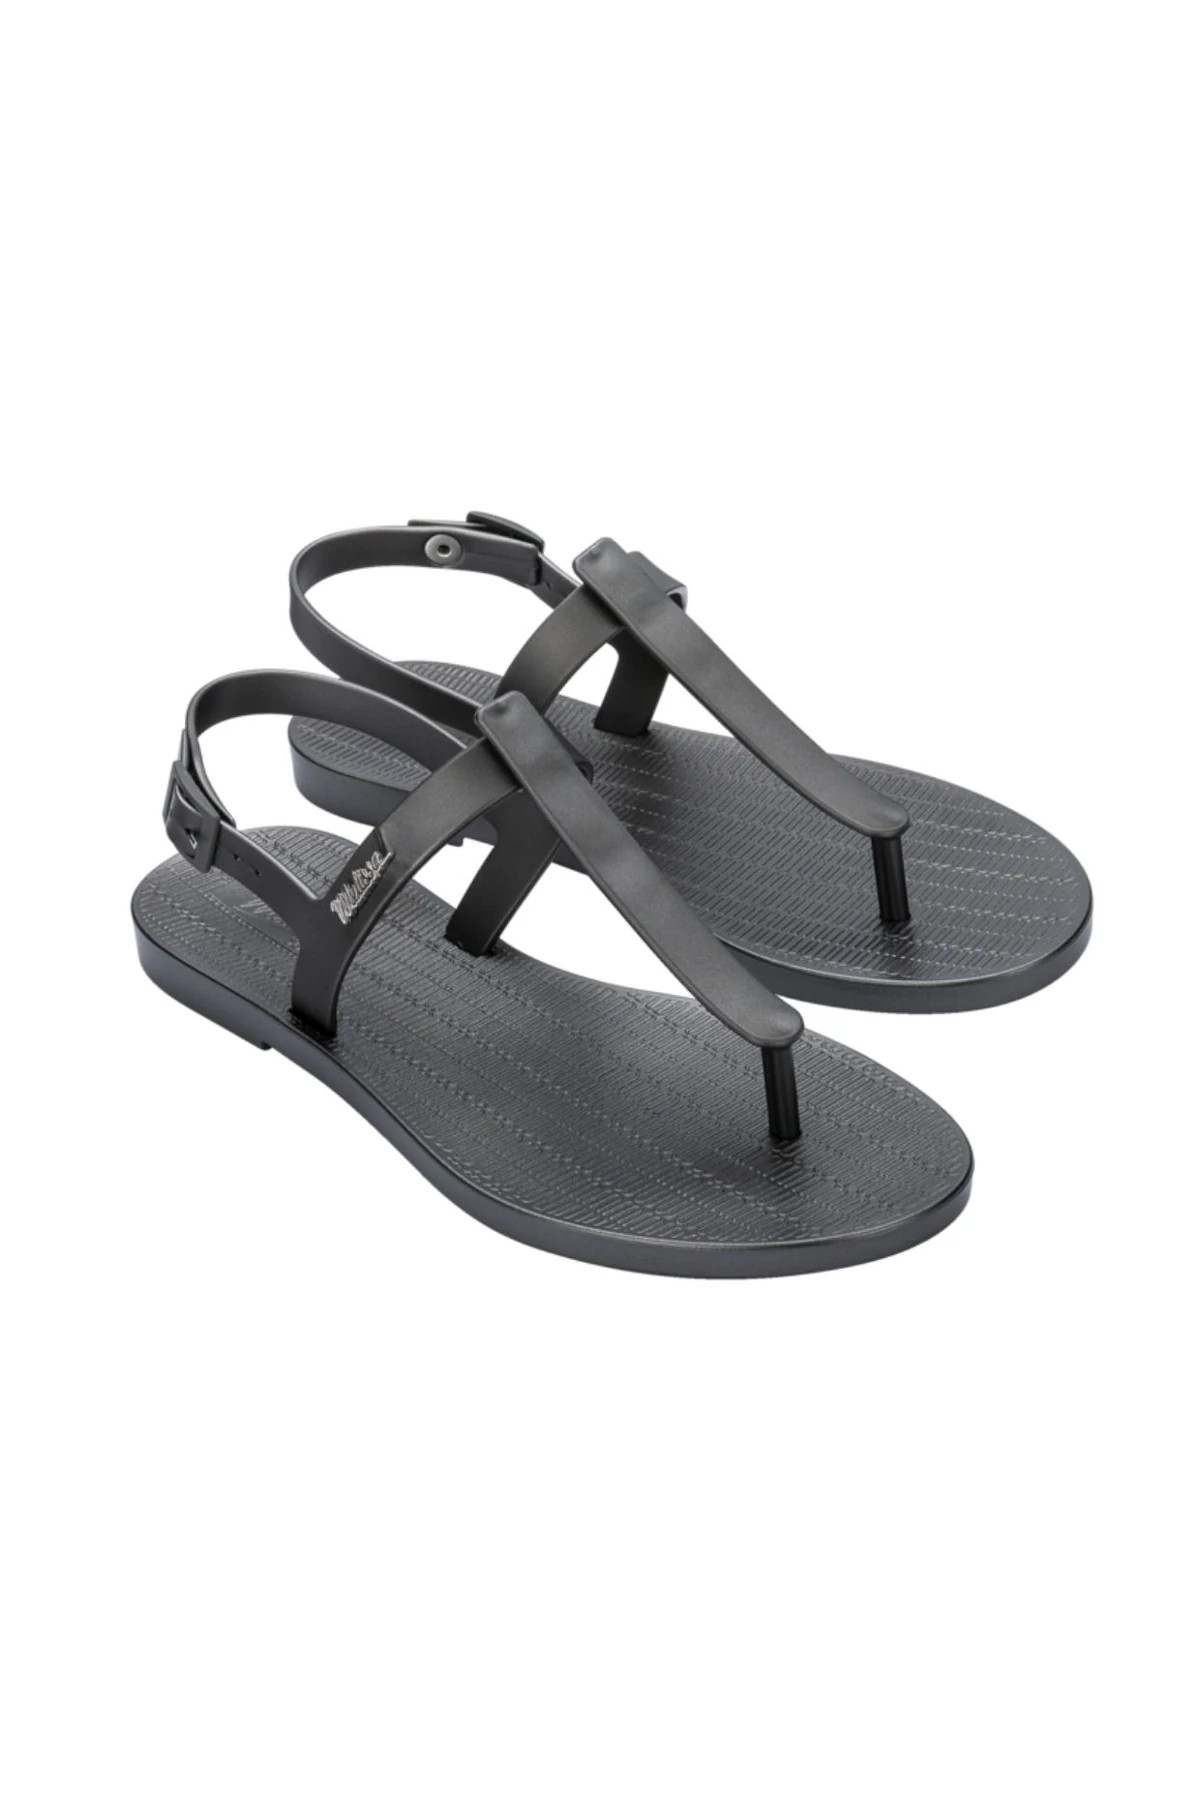 GRAPHITE Ventura Metallic Sandals image number 1